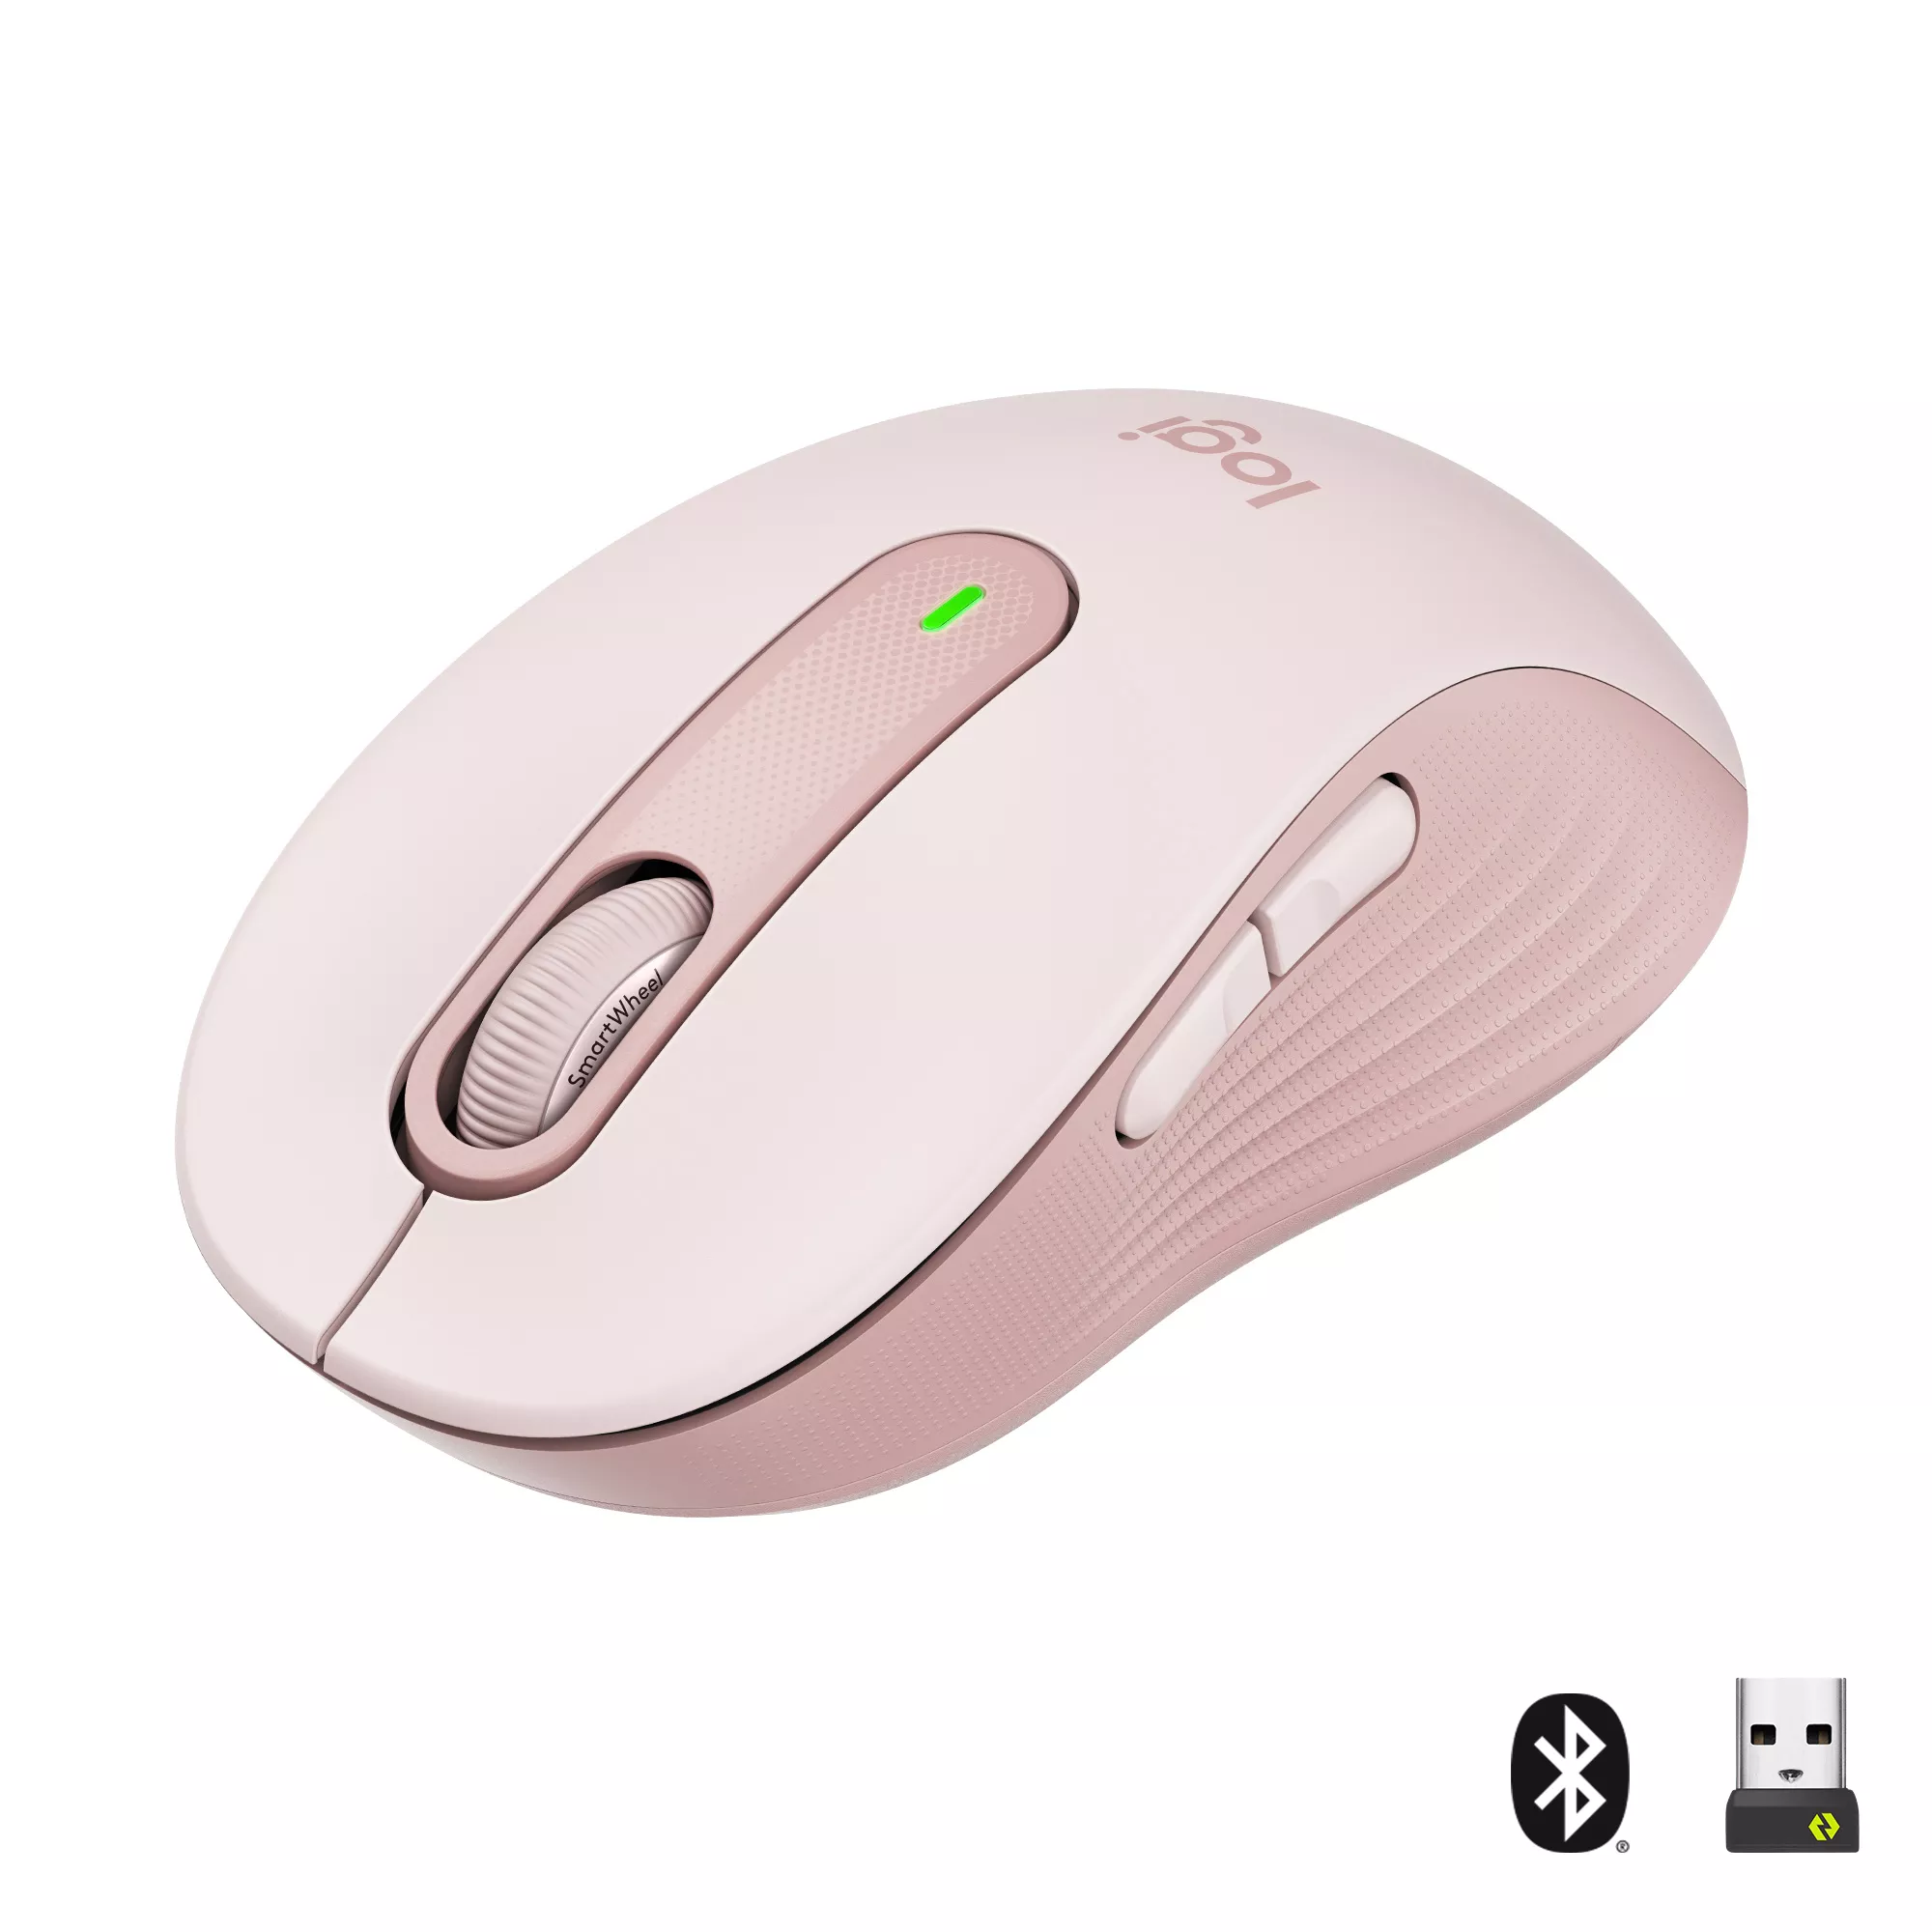 Achat LOGITECH Signature M650 Mouse optical 5 buttons wireless au meilleur prix